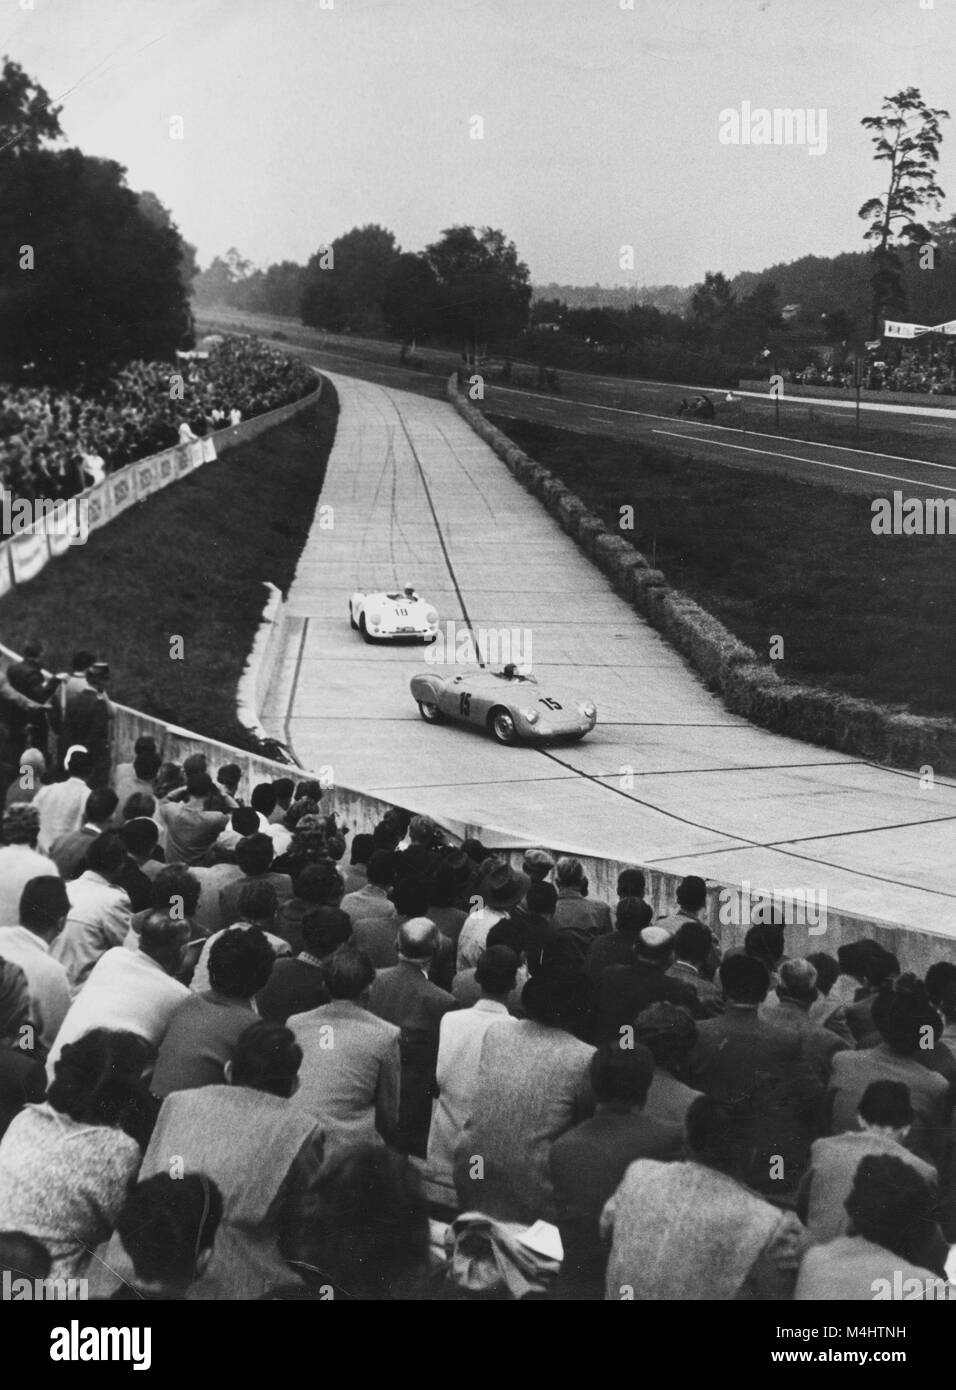 Le sport automobile, voiture de course sur circuit, ca. 1940, 1940, l'emplacement exact inconnu, Allemagne Banque D'Images